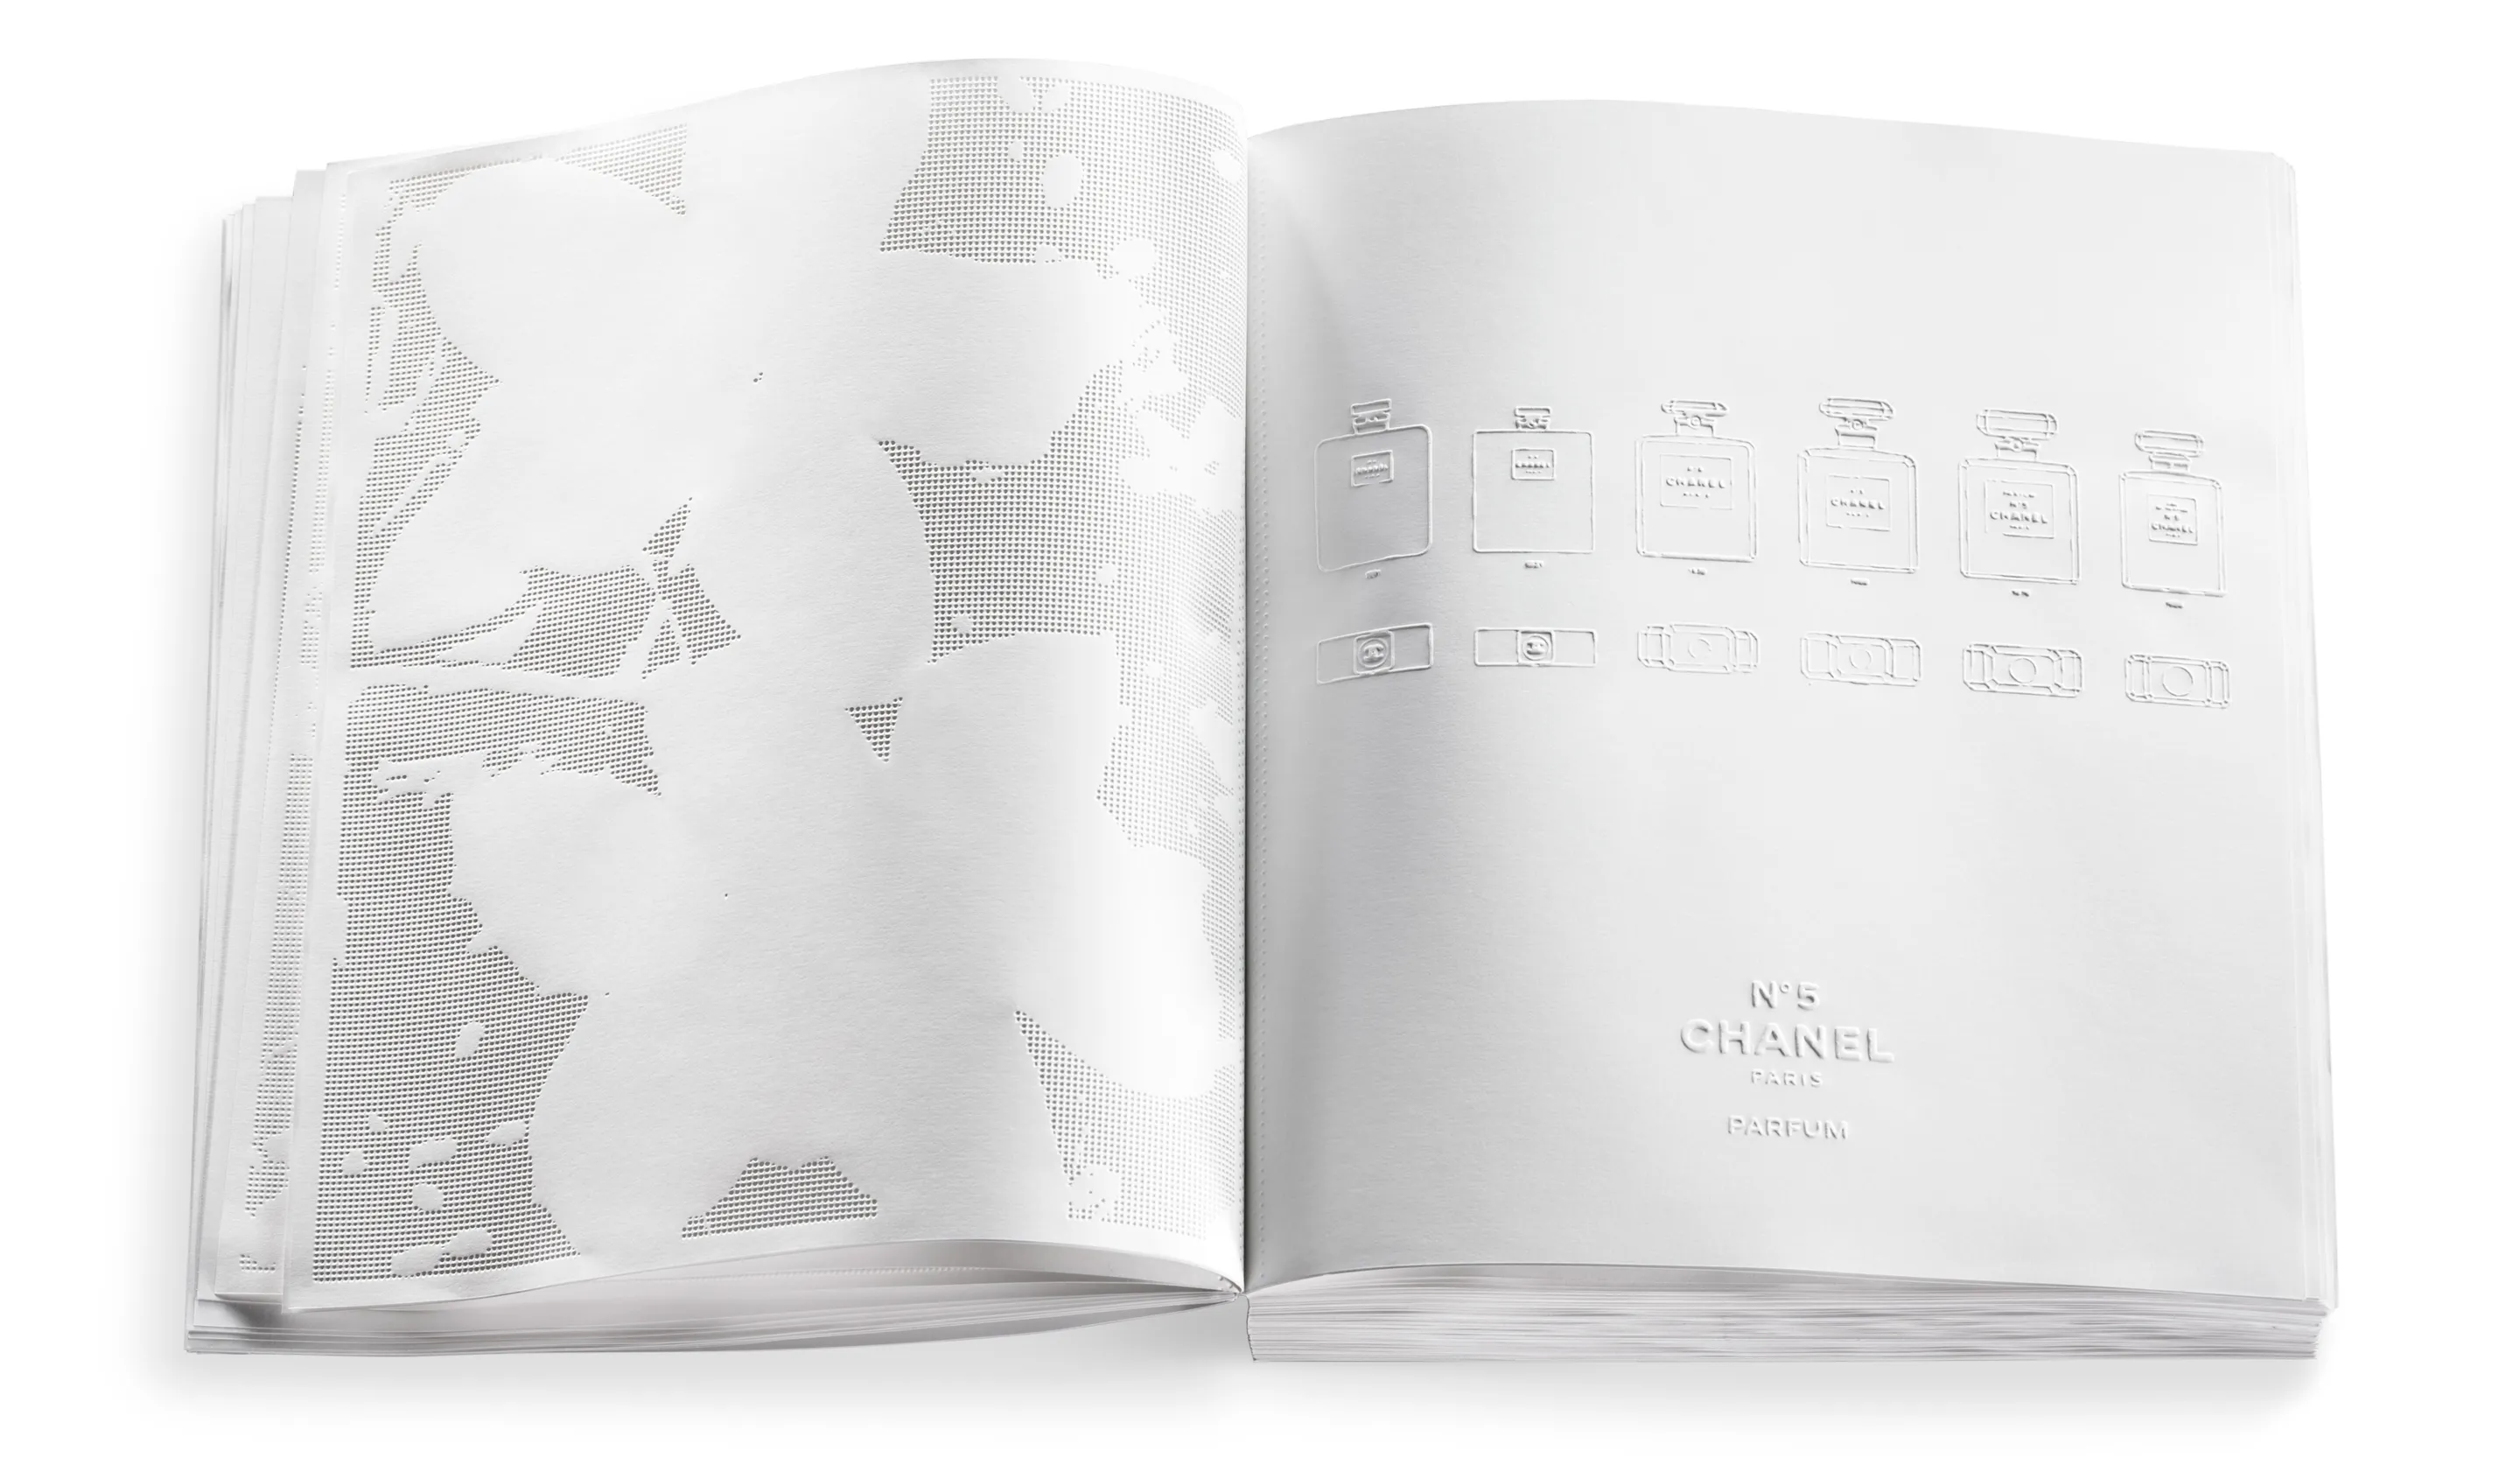 16 Best Chanel Book Decor ideas  book decor, chanel book decor, decor